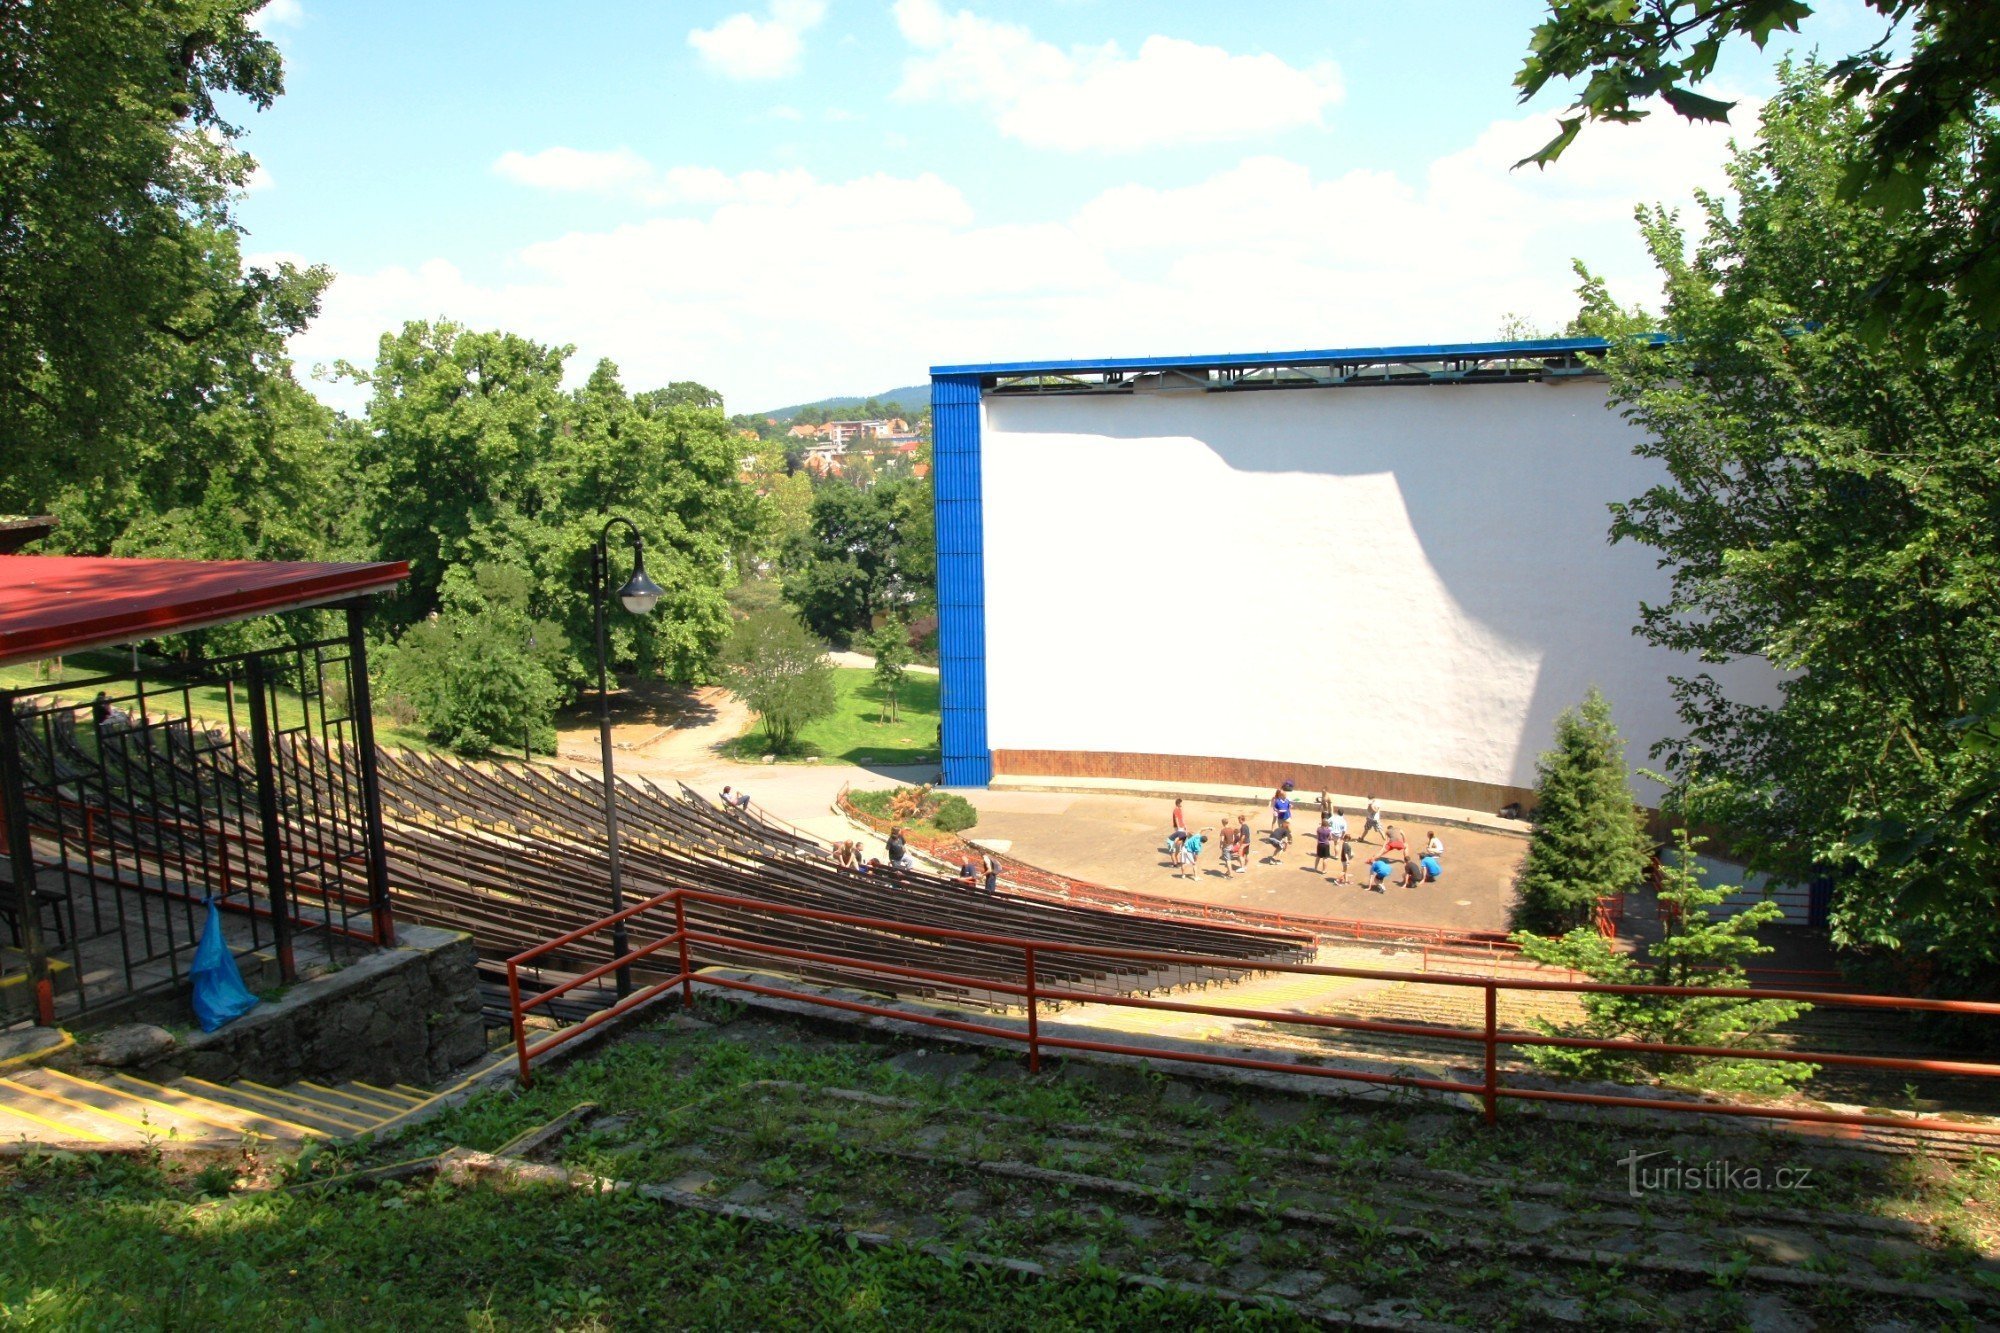 Rạp chiếu phim mùa hè nằm trong một giảng đường tự nhiên